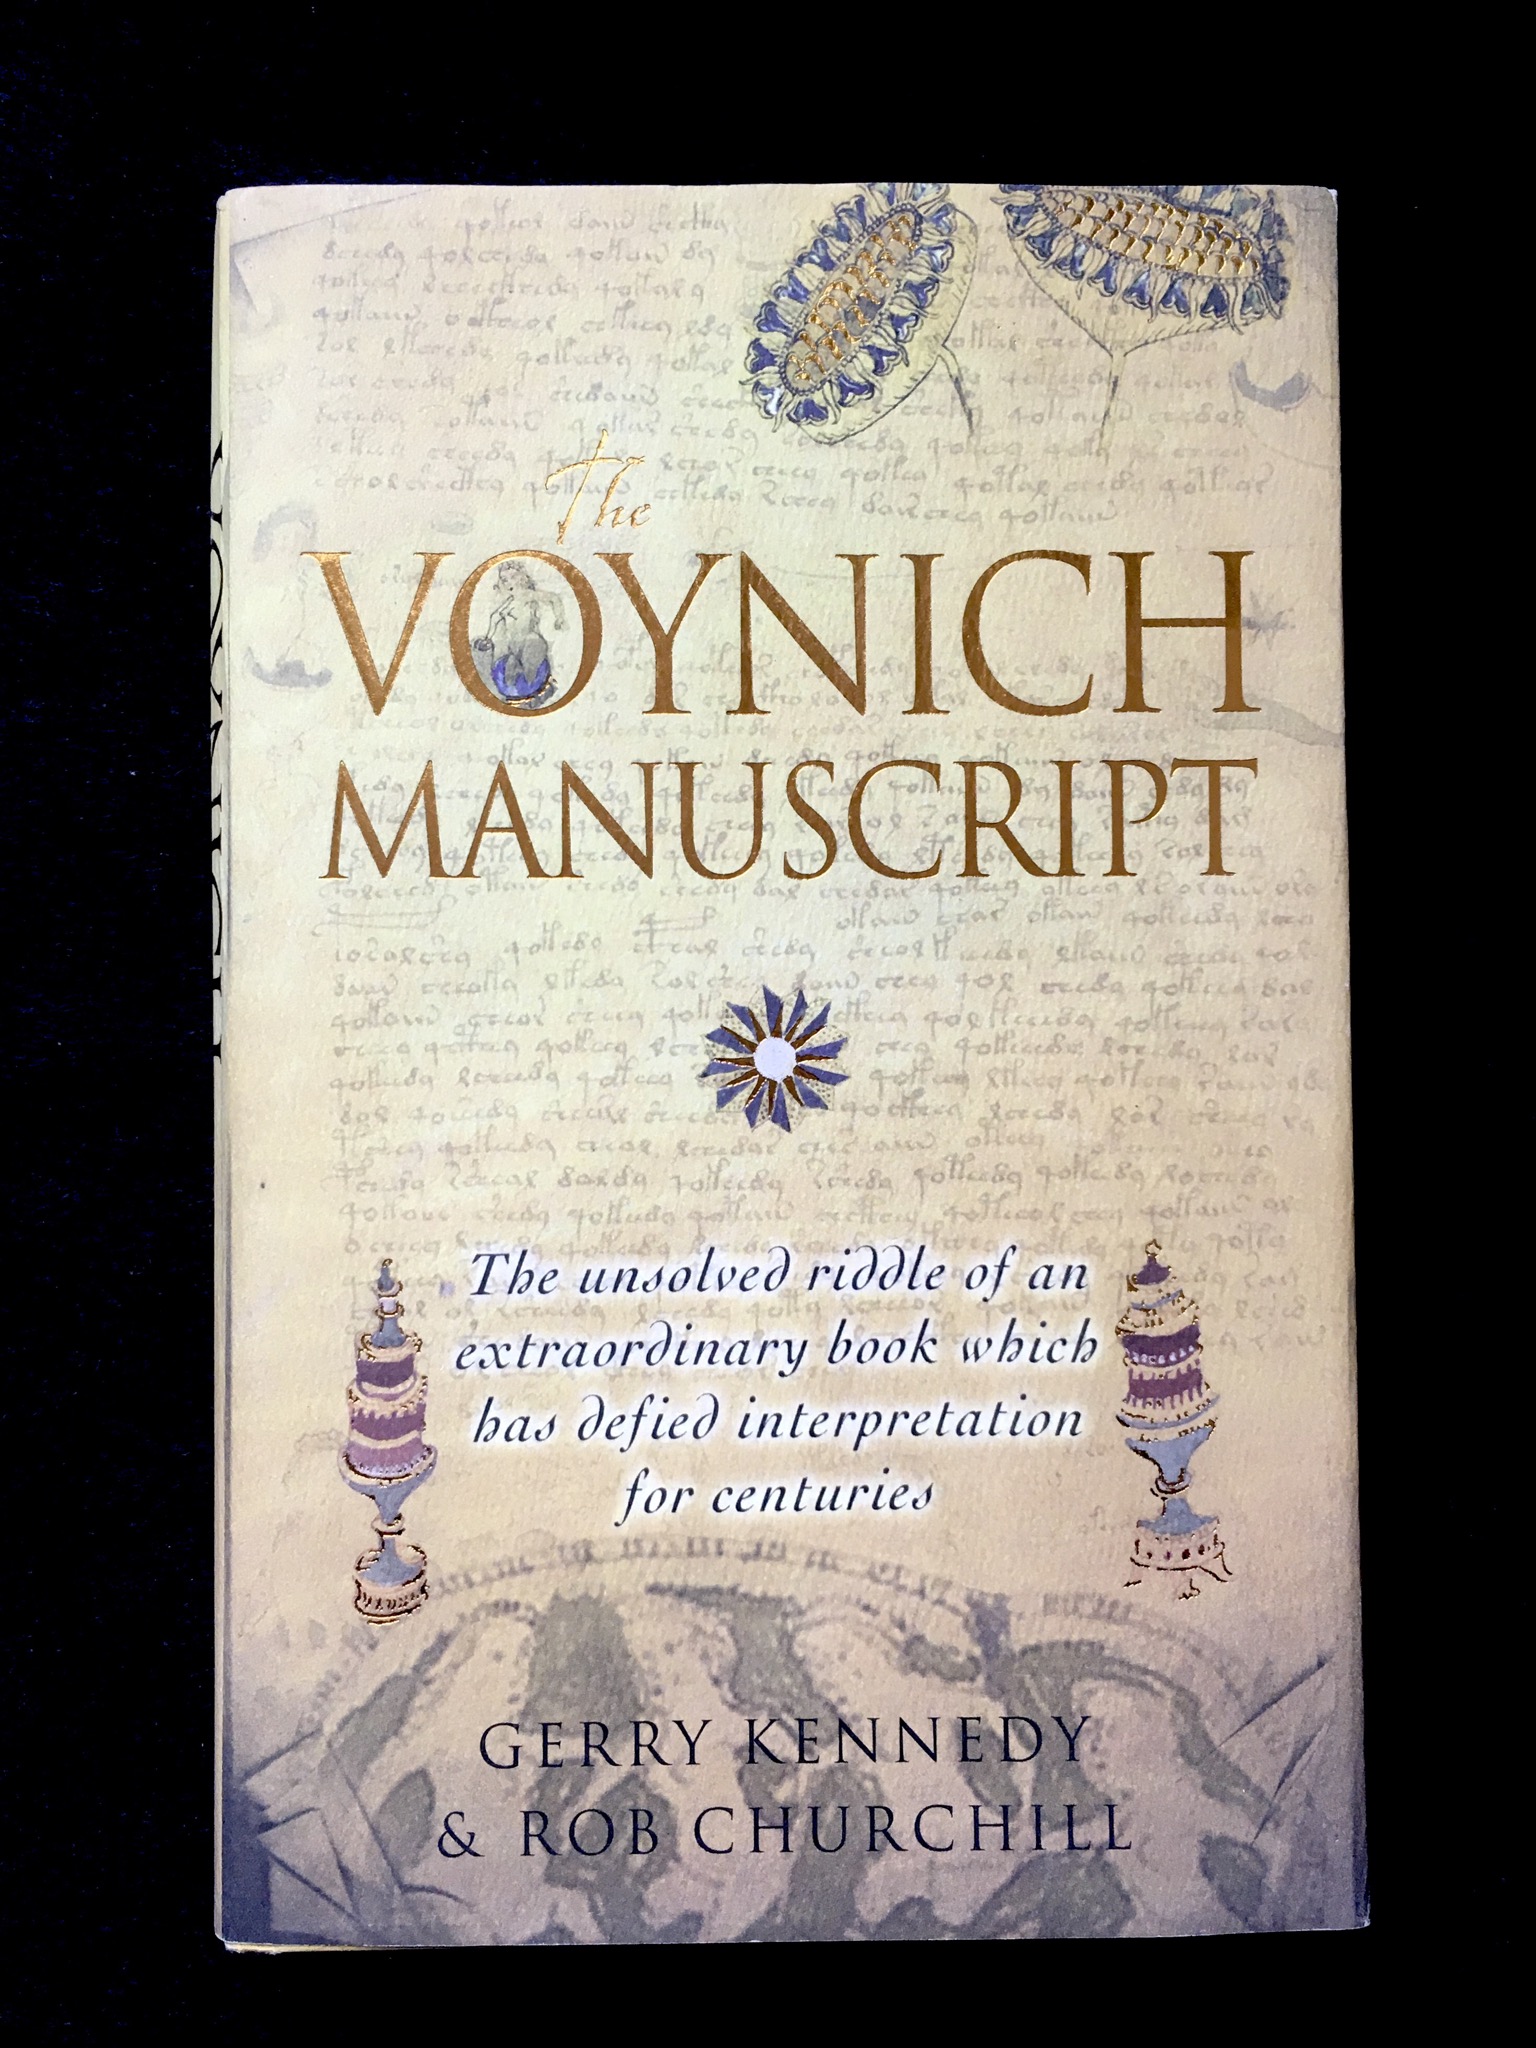 The Voynich Manuscript by Gerry Kennedy & Rob Churchill